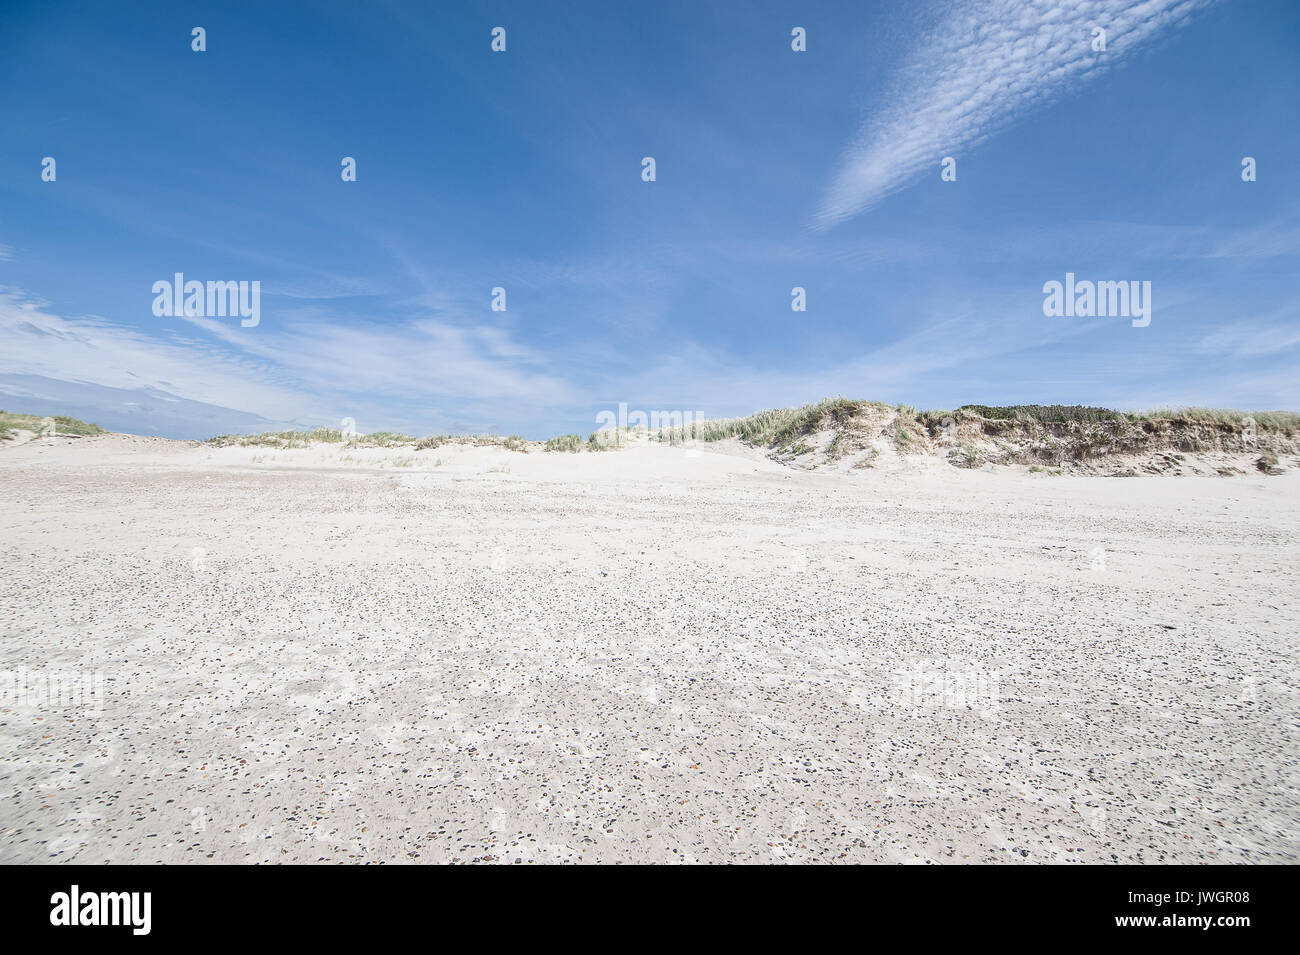 Sand dunes in Skallingen, Esbjerg, Denmark Stock Photo